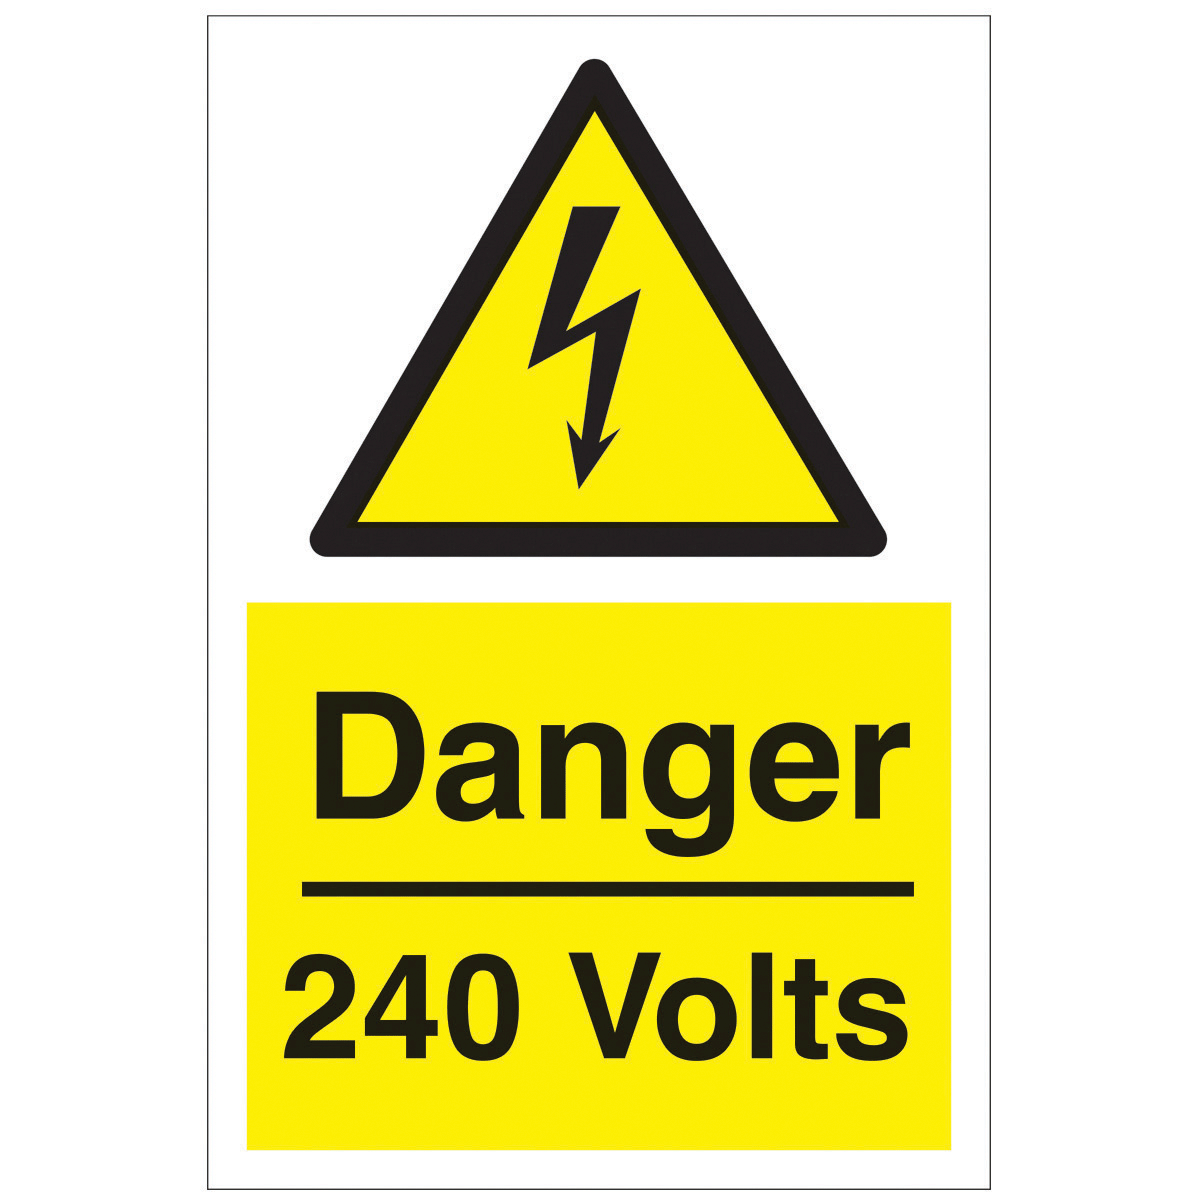 Danger 240 Volts Safety Sign - Hazard & Warning Sign from BiGDUG UK ...